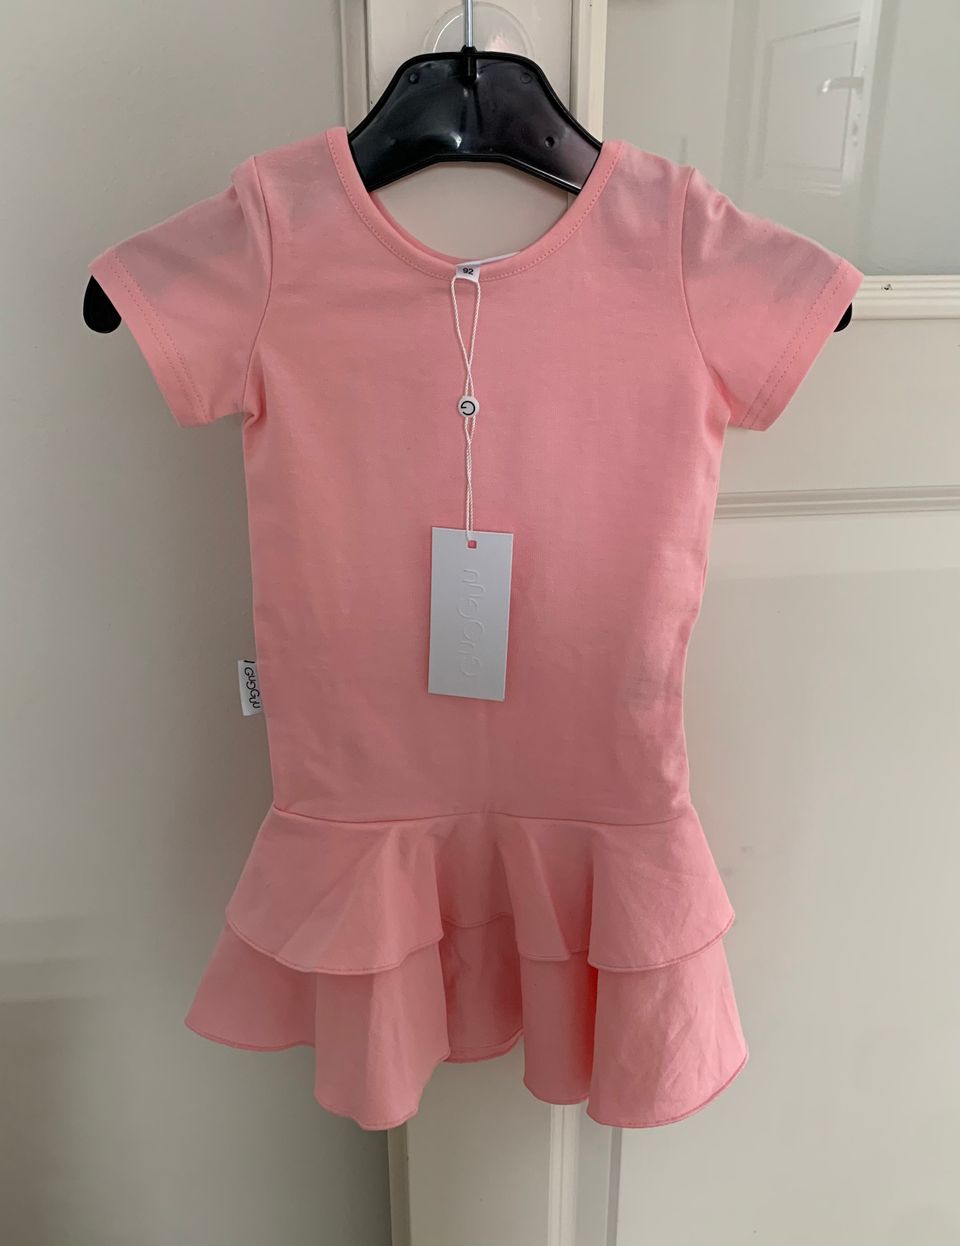 UUSI Gugguu Frilla T-Shirt Dress 92, Pink Chiffon